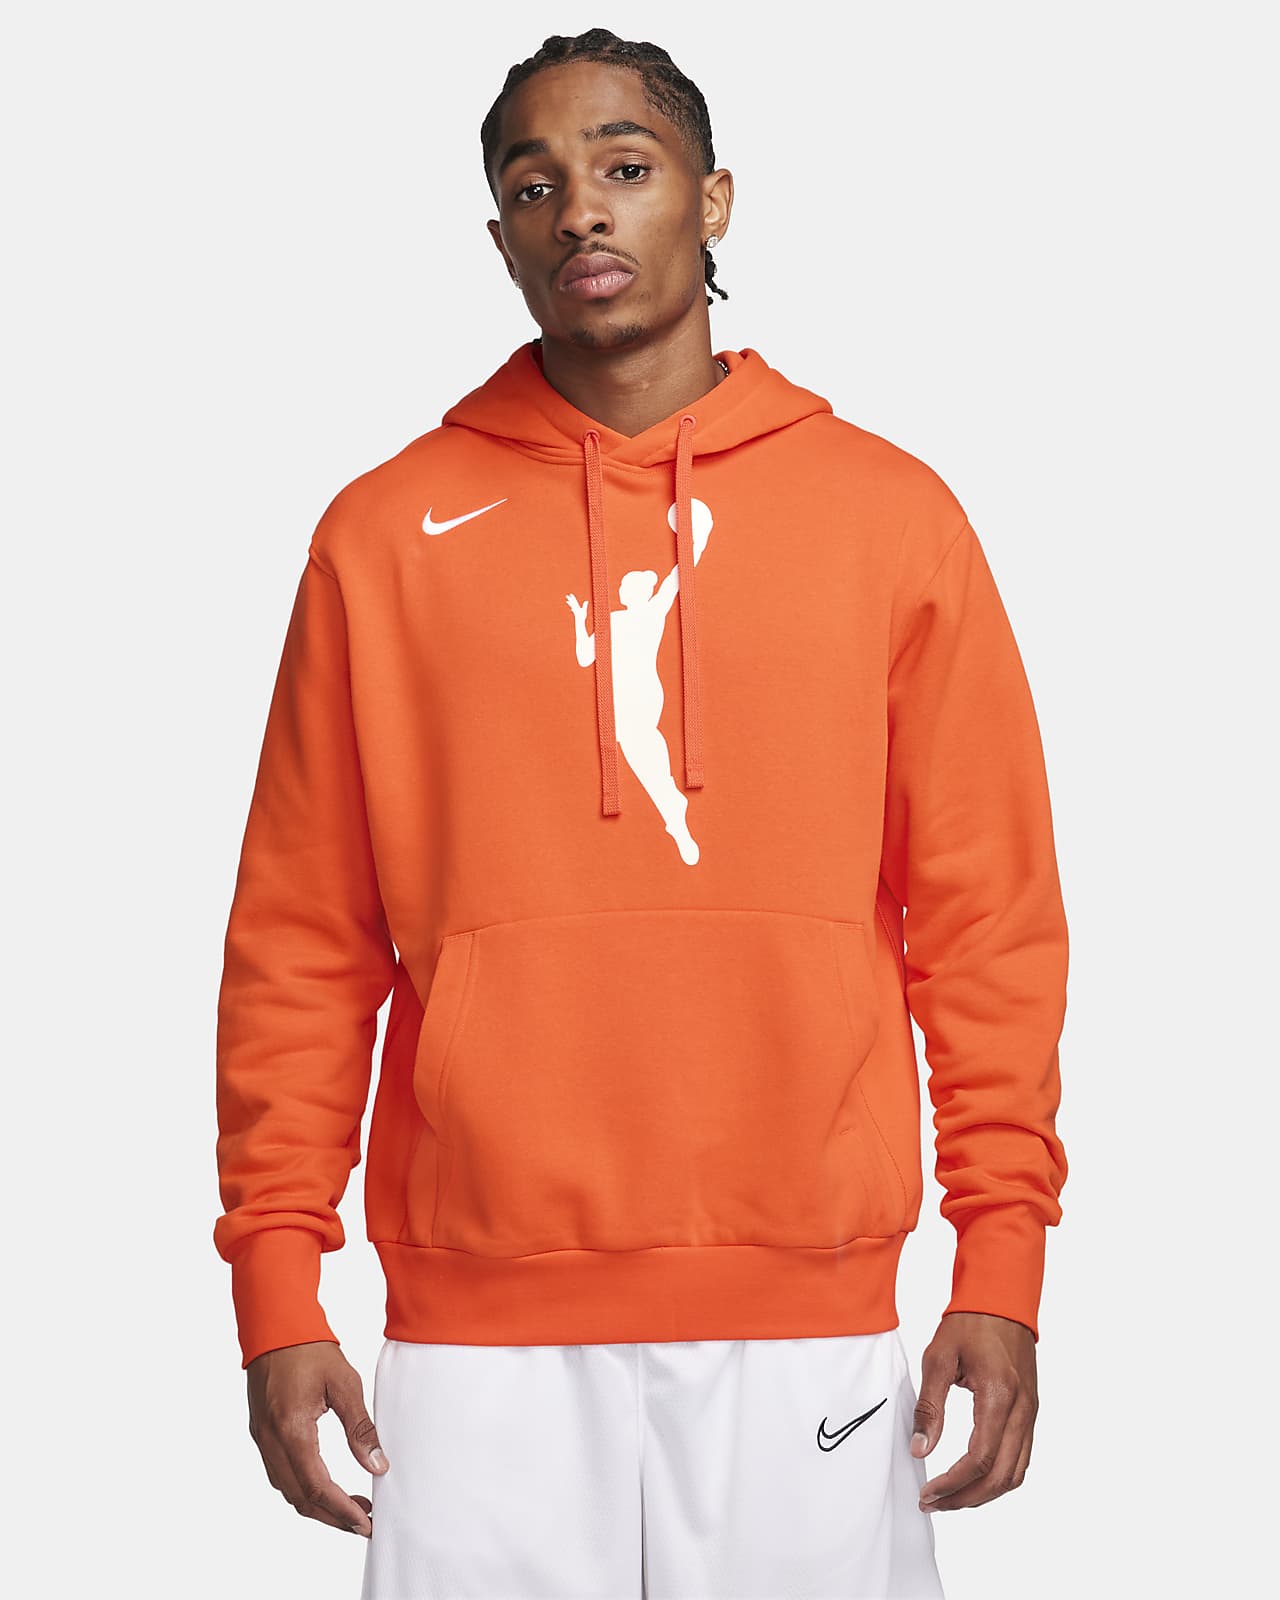 Transparentemente para justificar Consciente WNBA Sudadera con capucha de tejido Fleece Nike. Nike ES